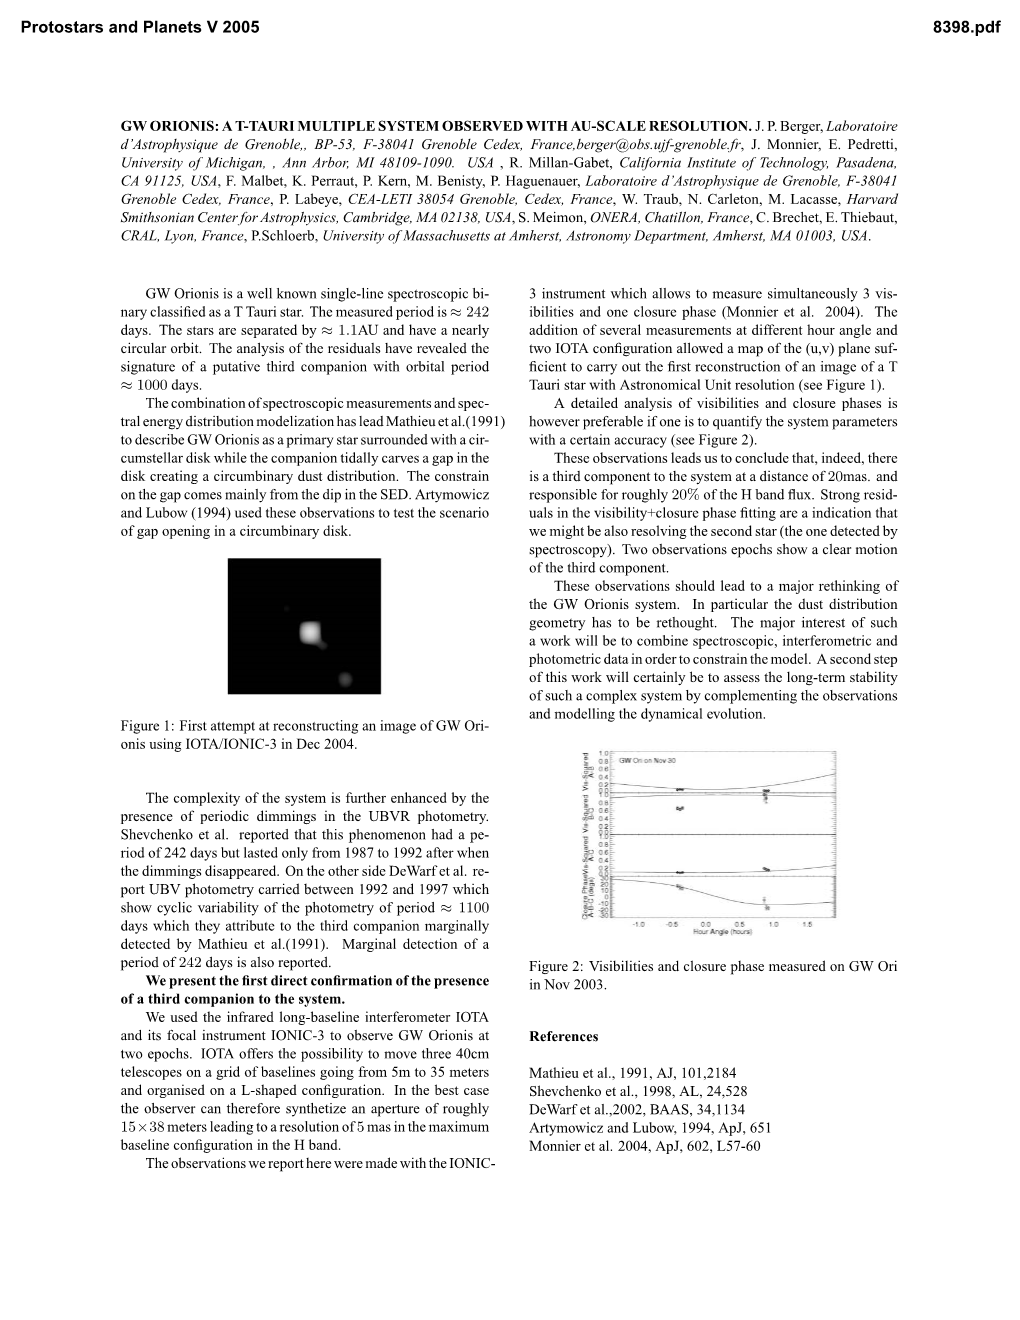 GW ORIONIS: a T-TAURI MULTIPLE SYSTEM OBSERVED with AU-SCALE RESOLUTION. J. P. Berger, Laboratoire D'astrophysique De Grenoble